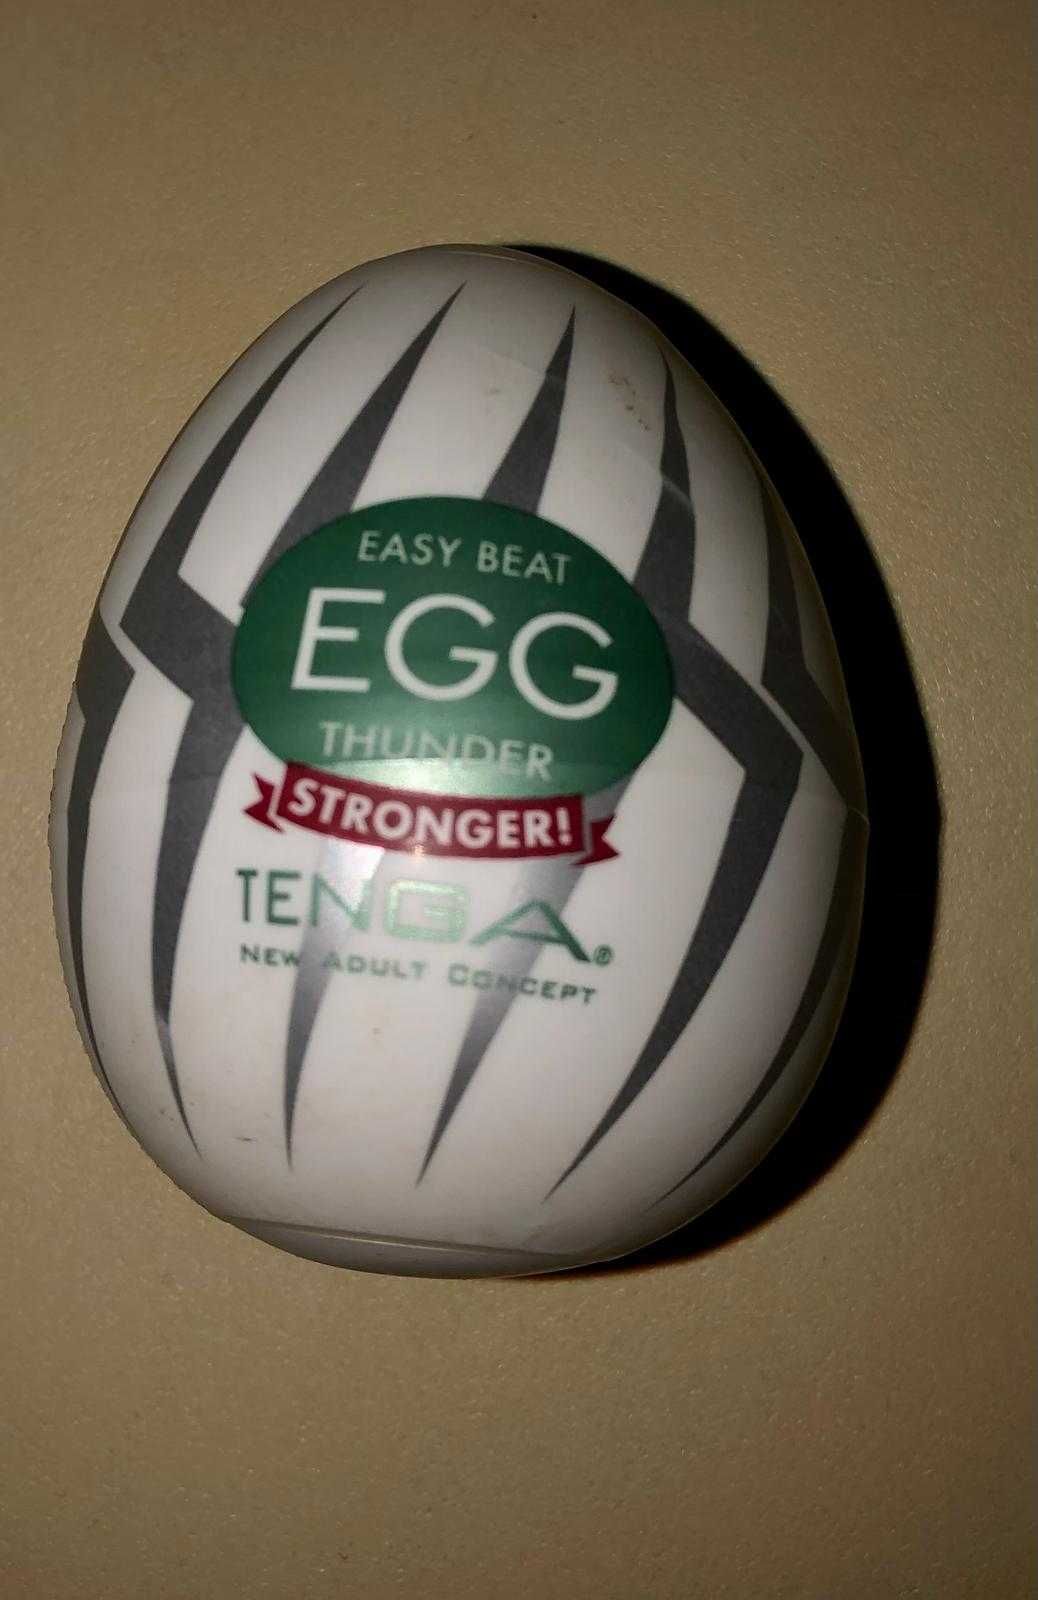 easy beat egg thunder stronger tenga